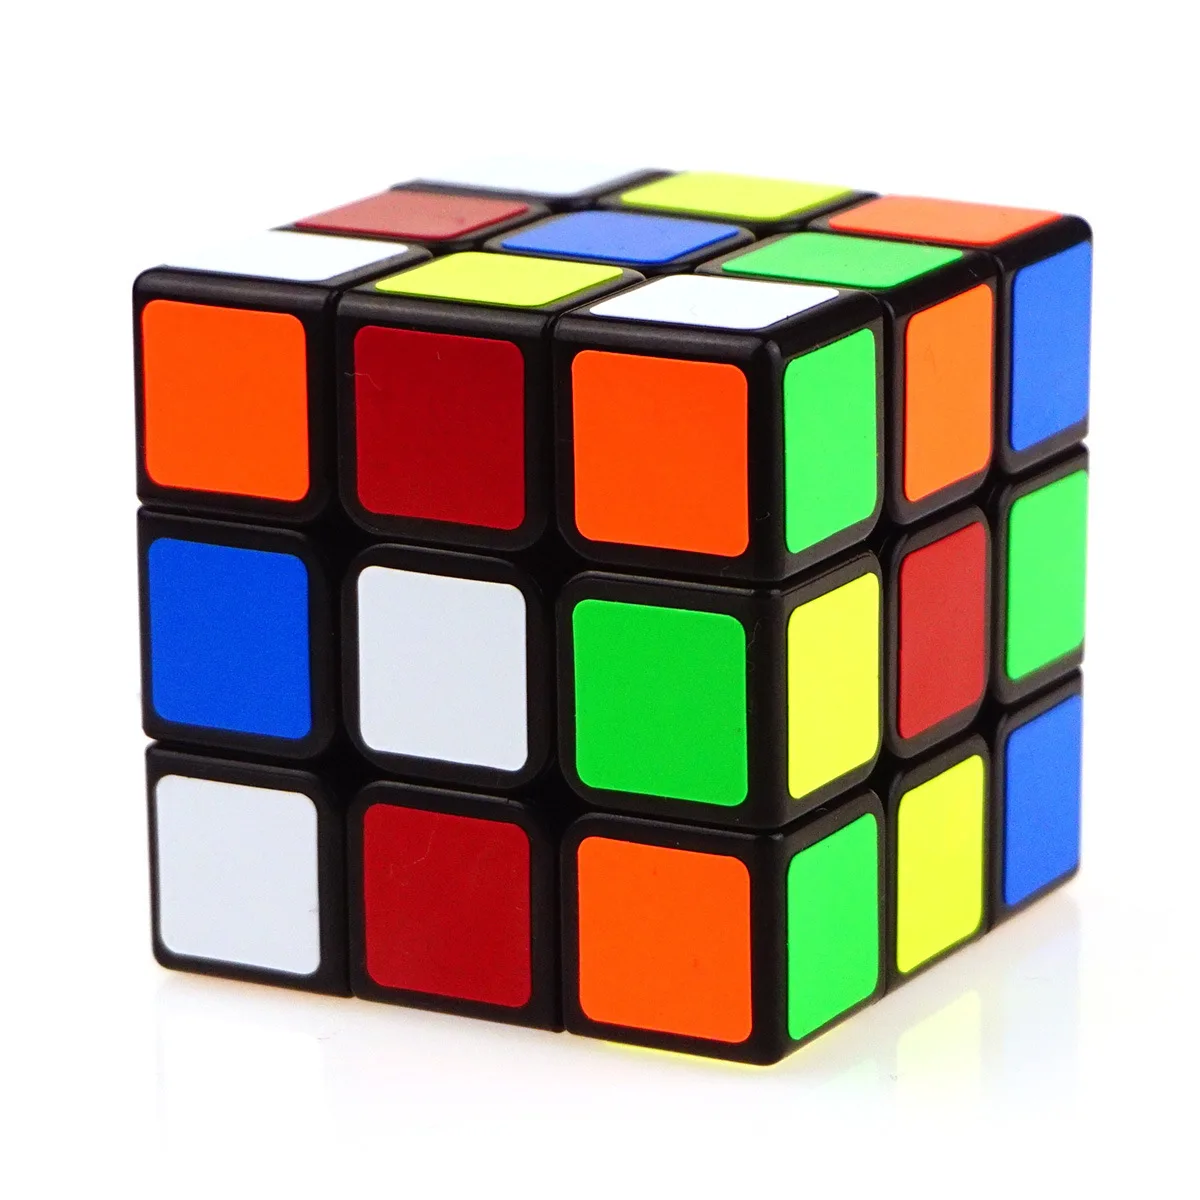 

Магический куб 3x3, профессиональный куб Magico 3x3x3 скоростной куб карманный 3x3x3 Кубики-головоломки, обучающие игрушки для детей, подарки, кубик